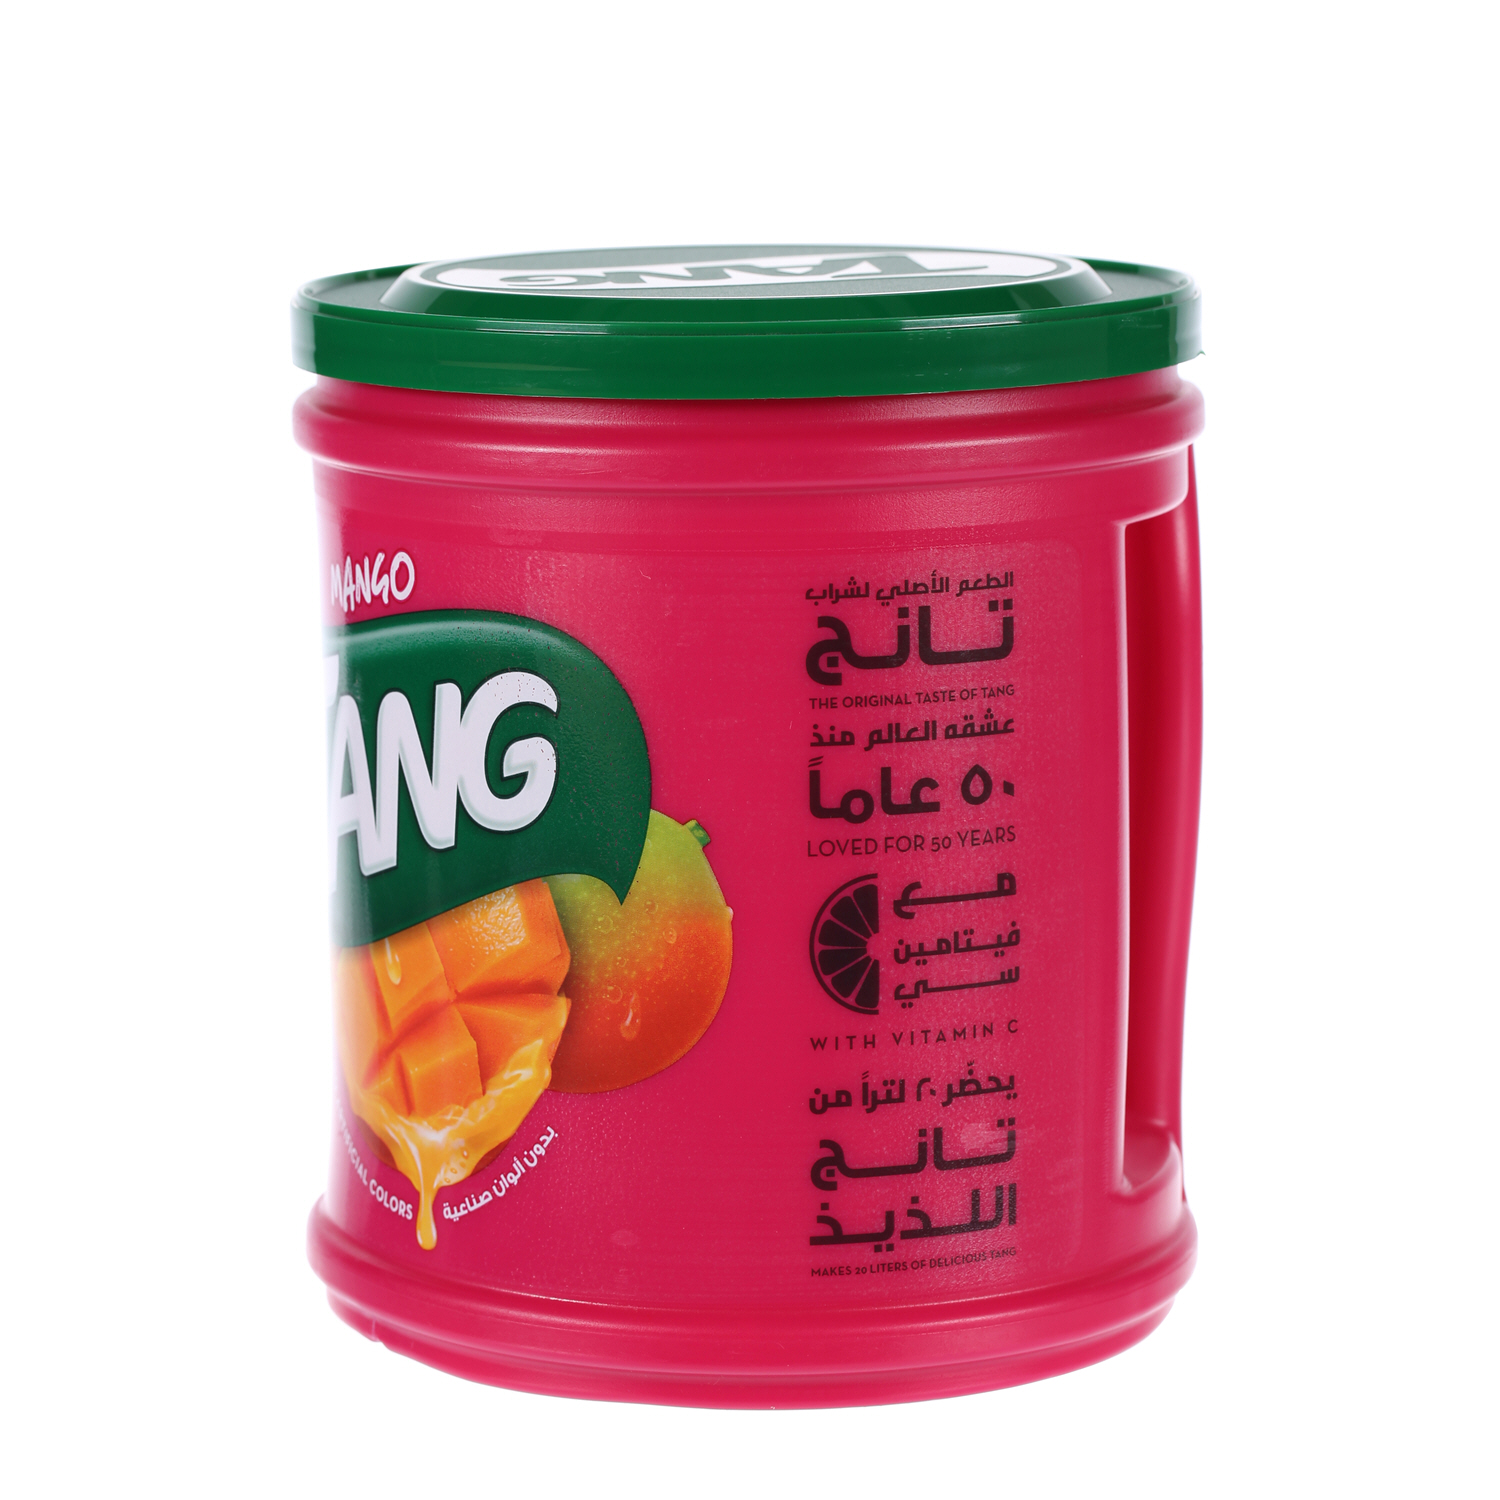 Tang Mango 2.5Kg